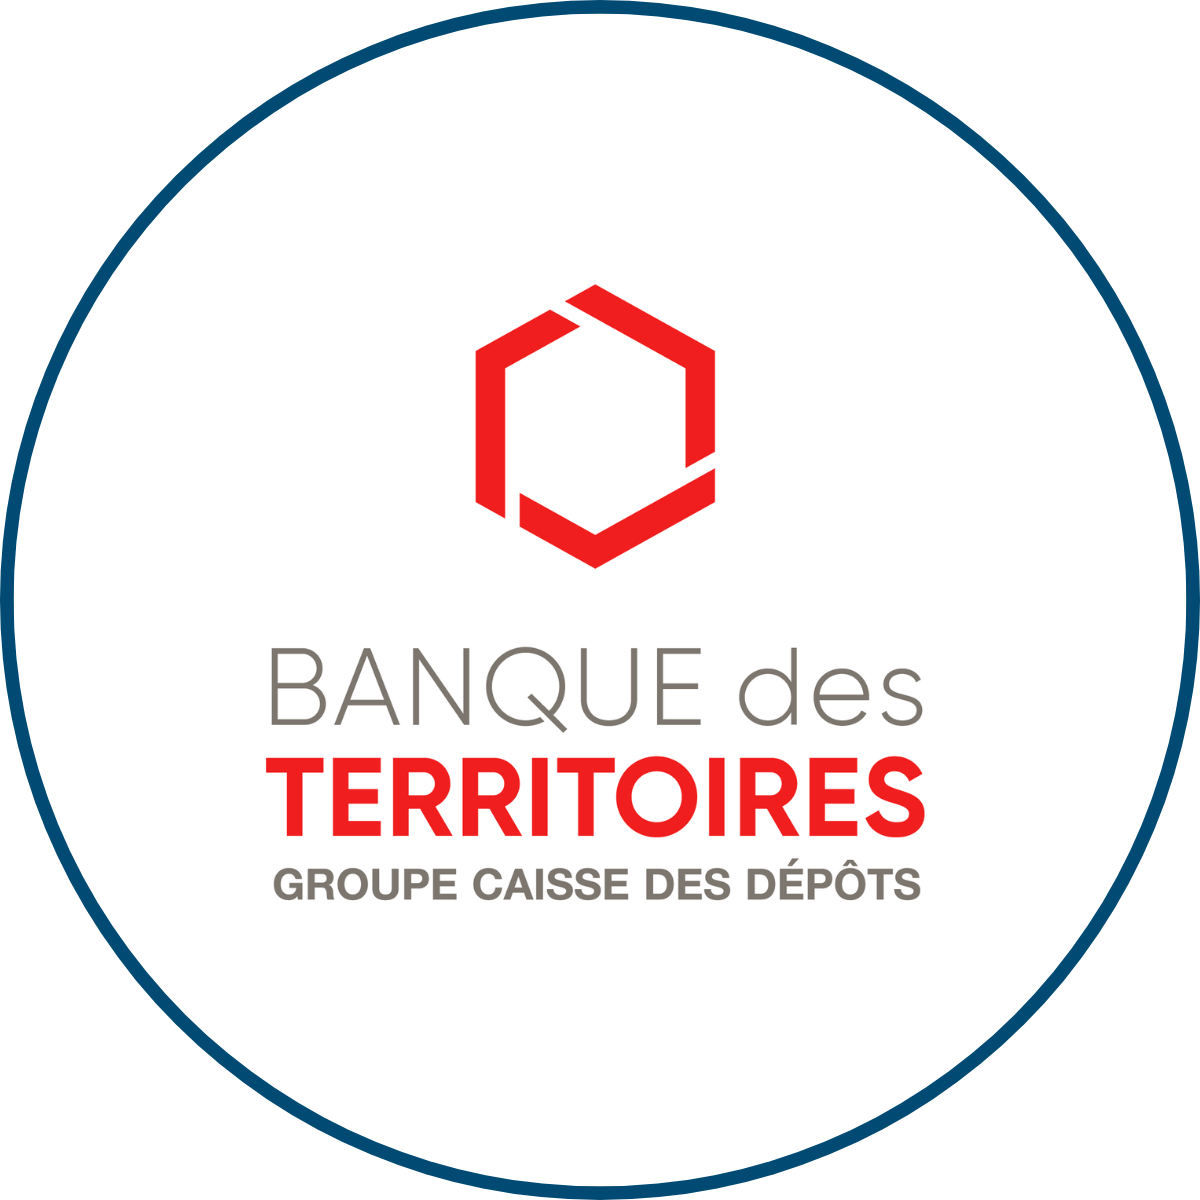 SEM IN Situ | Notre équipe | Banque des Territoires | Partenaires | Espaces Économique & Commerciaux | Valence Romans Agglo | Drôme